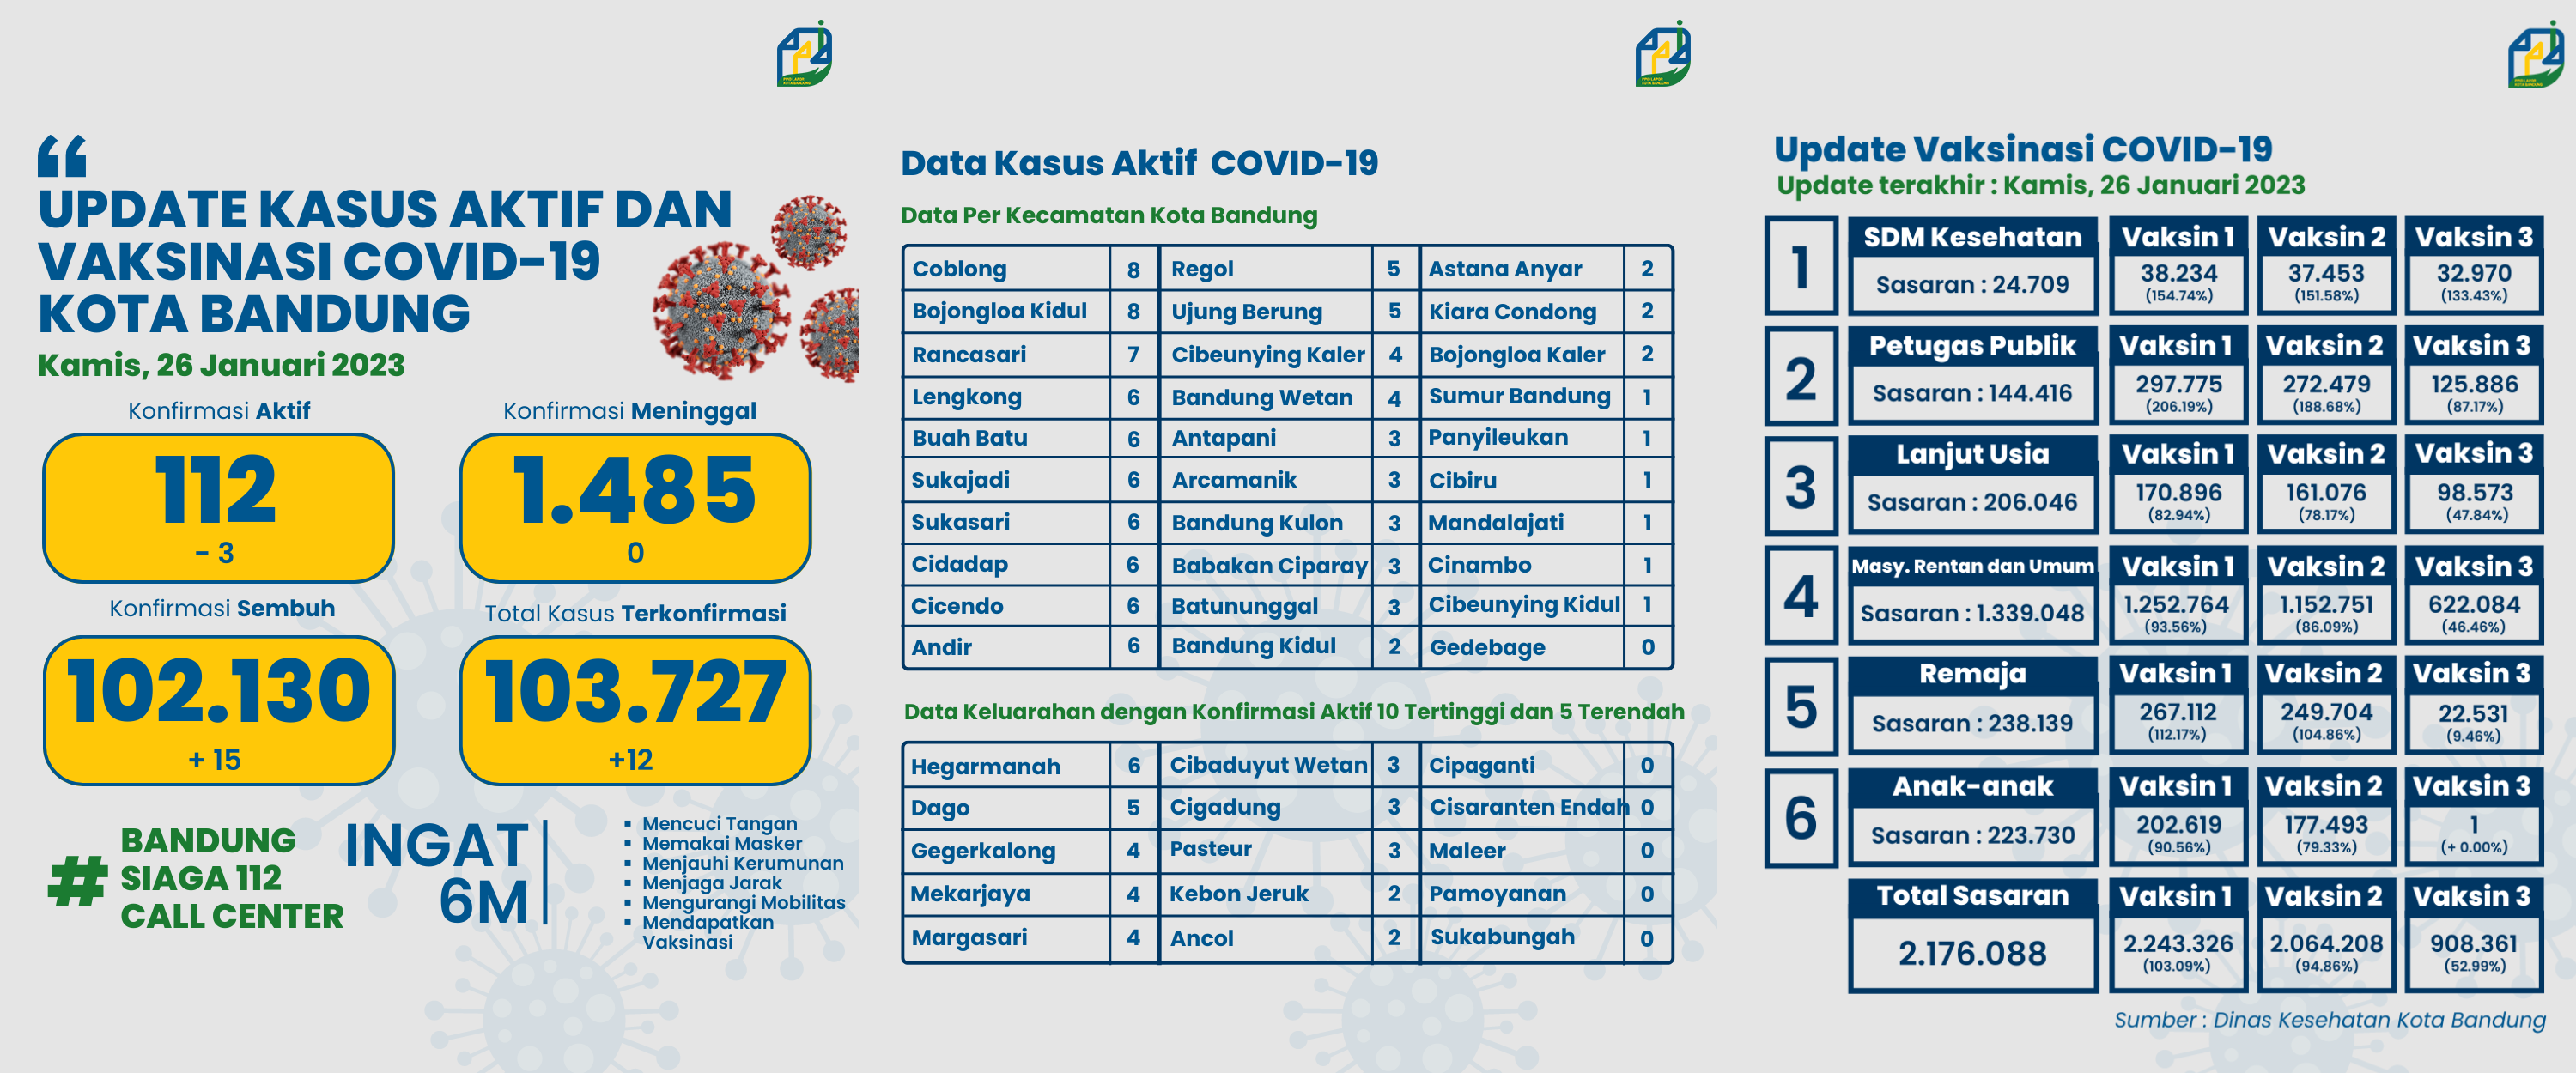 UPDATE STATISTIK COVID-19 DI KOTA BANDUNG PER TANGGAL 26 JANUARI 2023